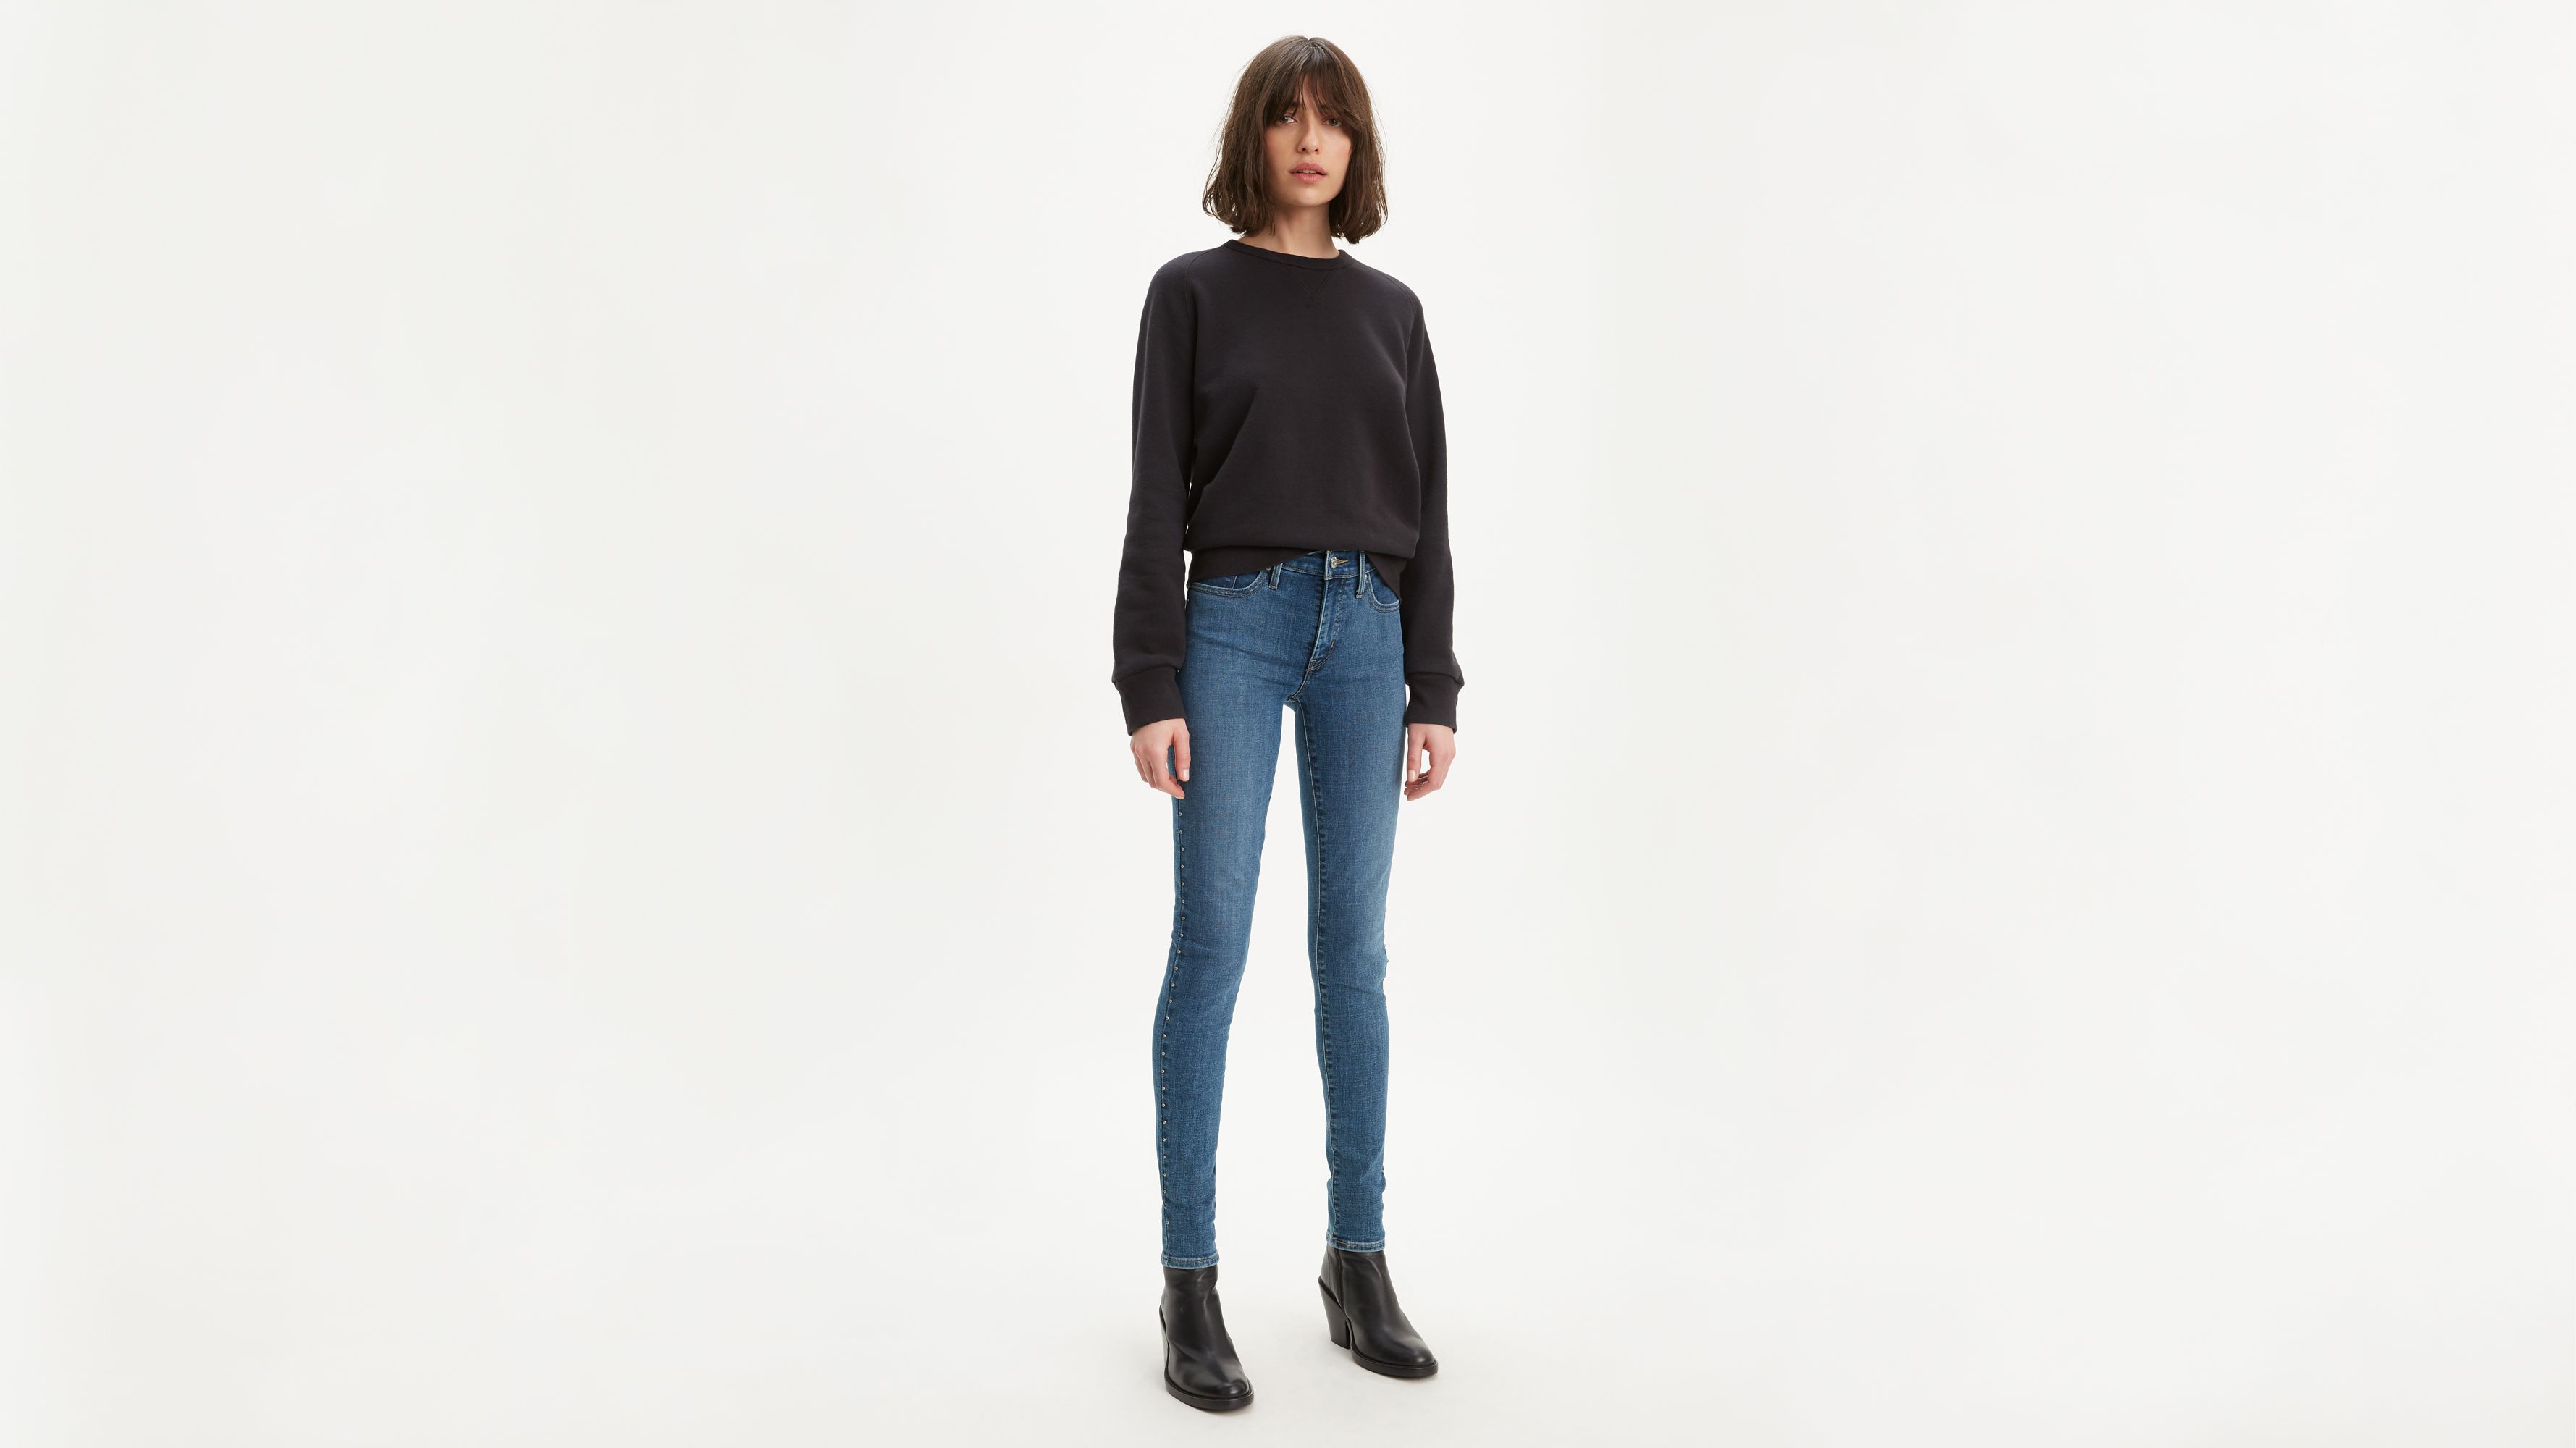 Women's Jeans On Sale - Shop Discount 